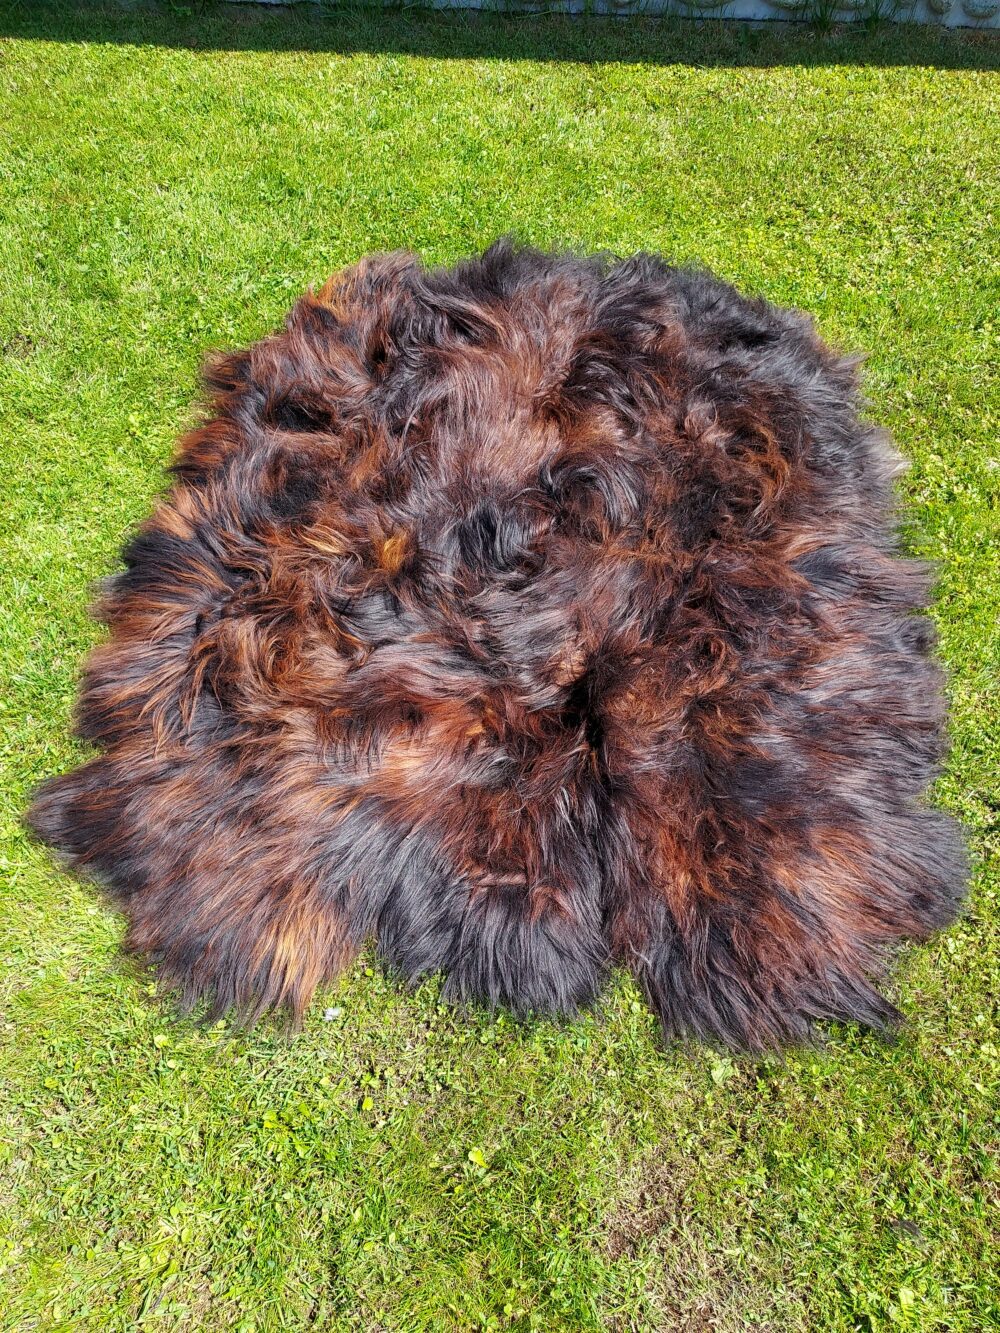 Six Stitched Leathers “Island” Natural Fire Black Stitched sheepskins Producent owczych skór dekoracyjnych | Tannery Sheepskin | KalSkór 3